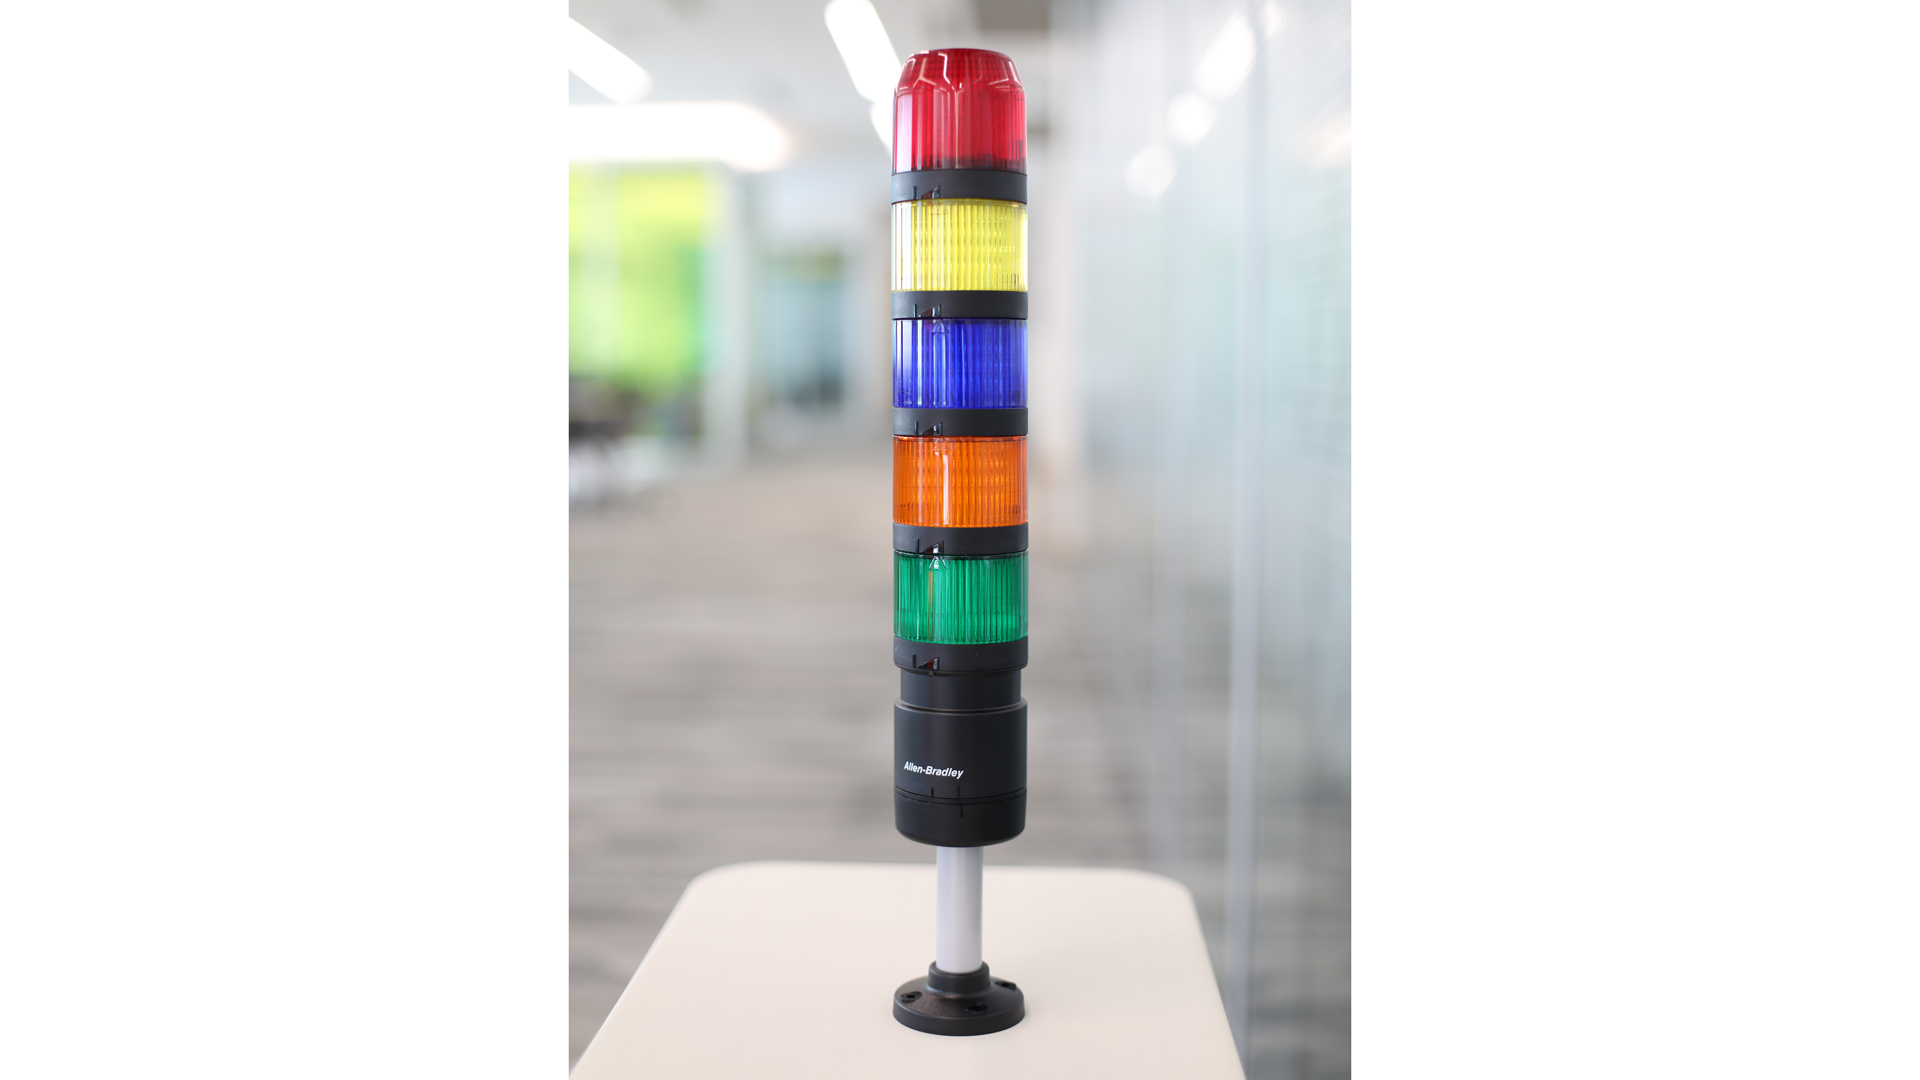 表のIO-Linkスタックライト- 上から下 - 赤、黄色、青、アンバーおよび緑の点灯していないライトモジュール、黒のポール取付け 